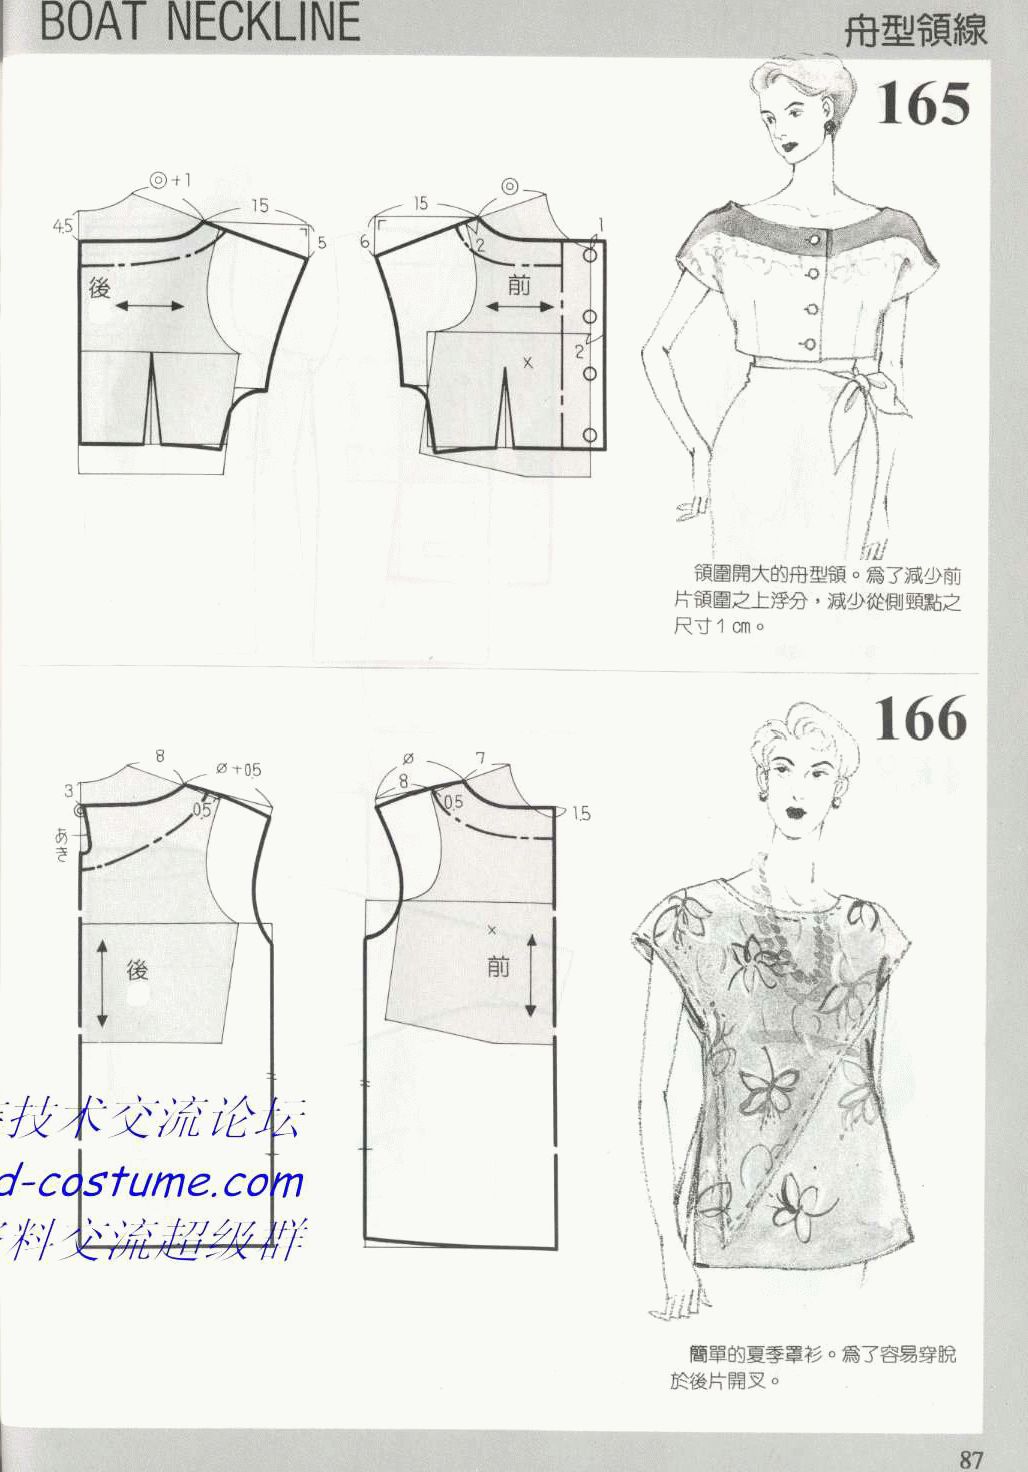 [转载]服装图纸集|188种领子的款式与图纸(下)